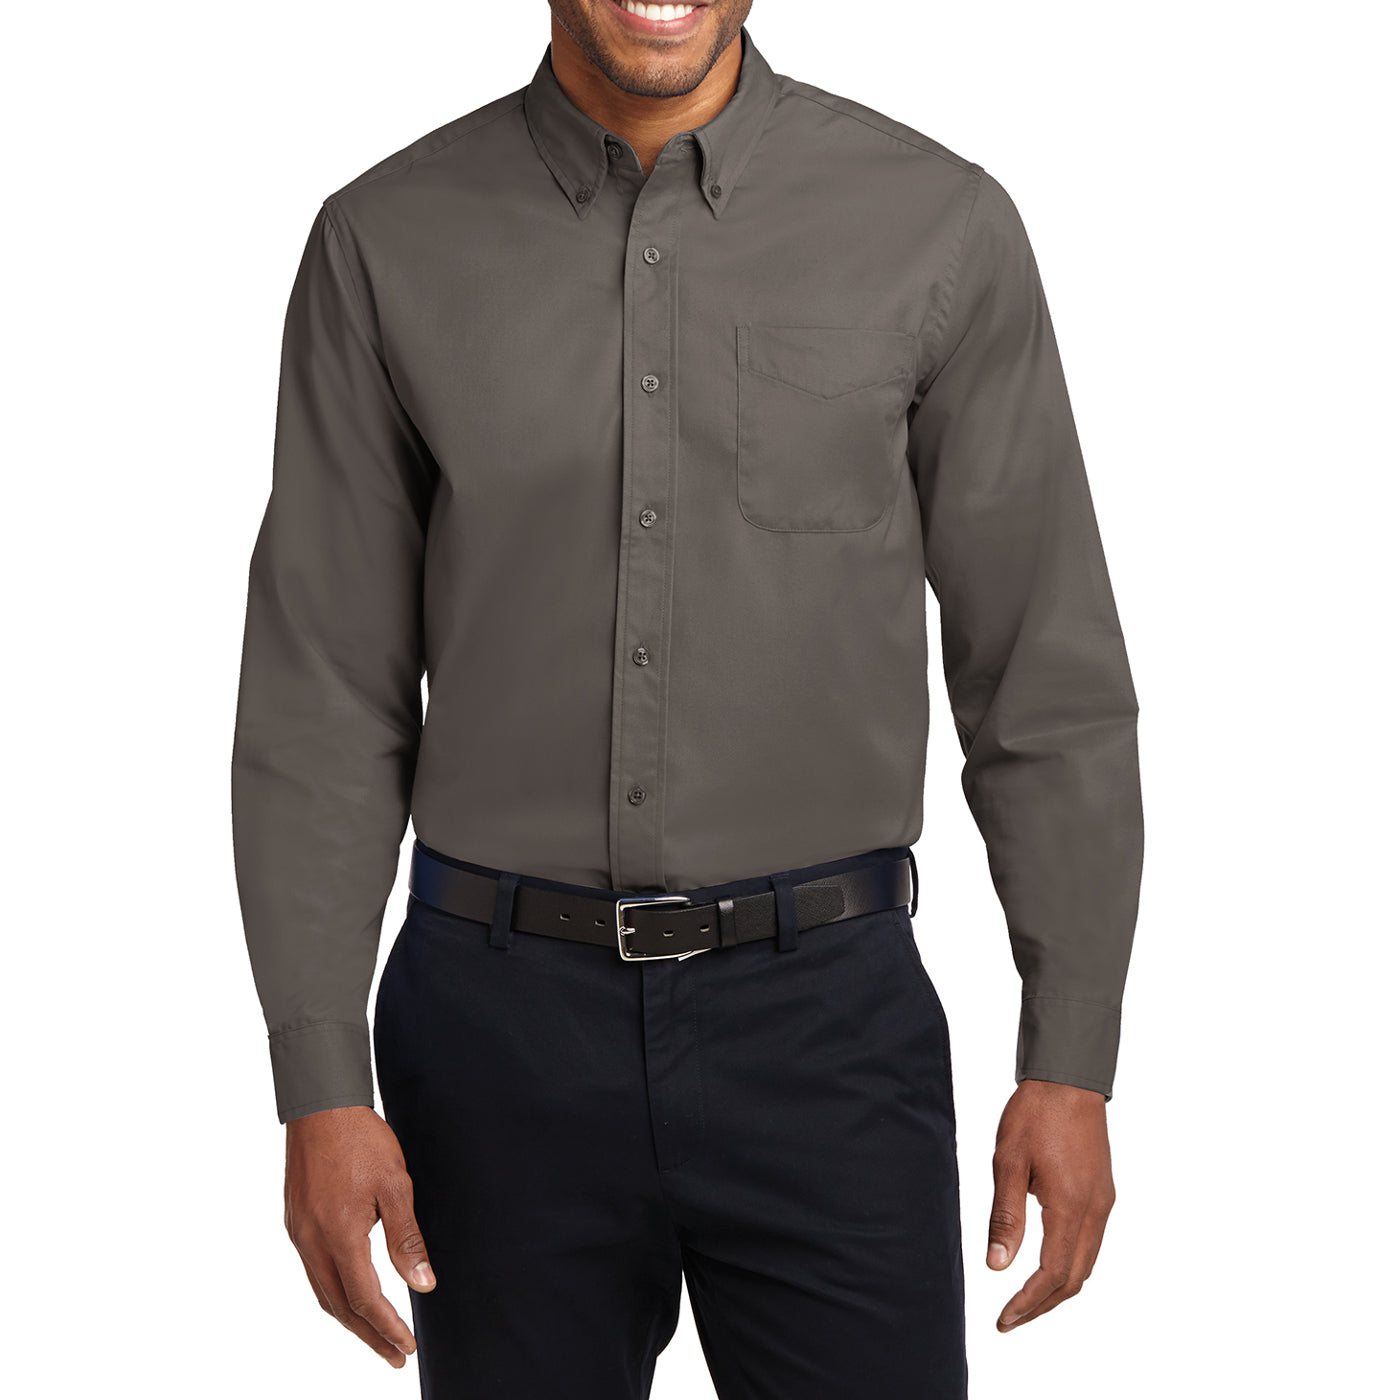 Men's Long Sleeve Easy Care Shirt - Bark - Front